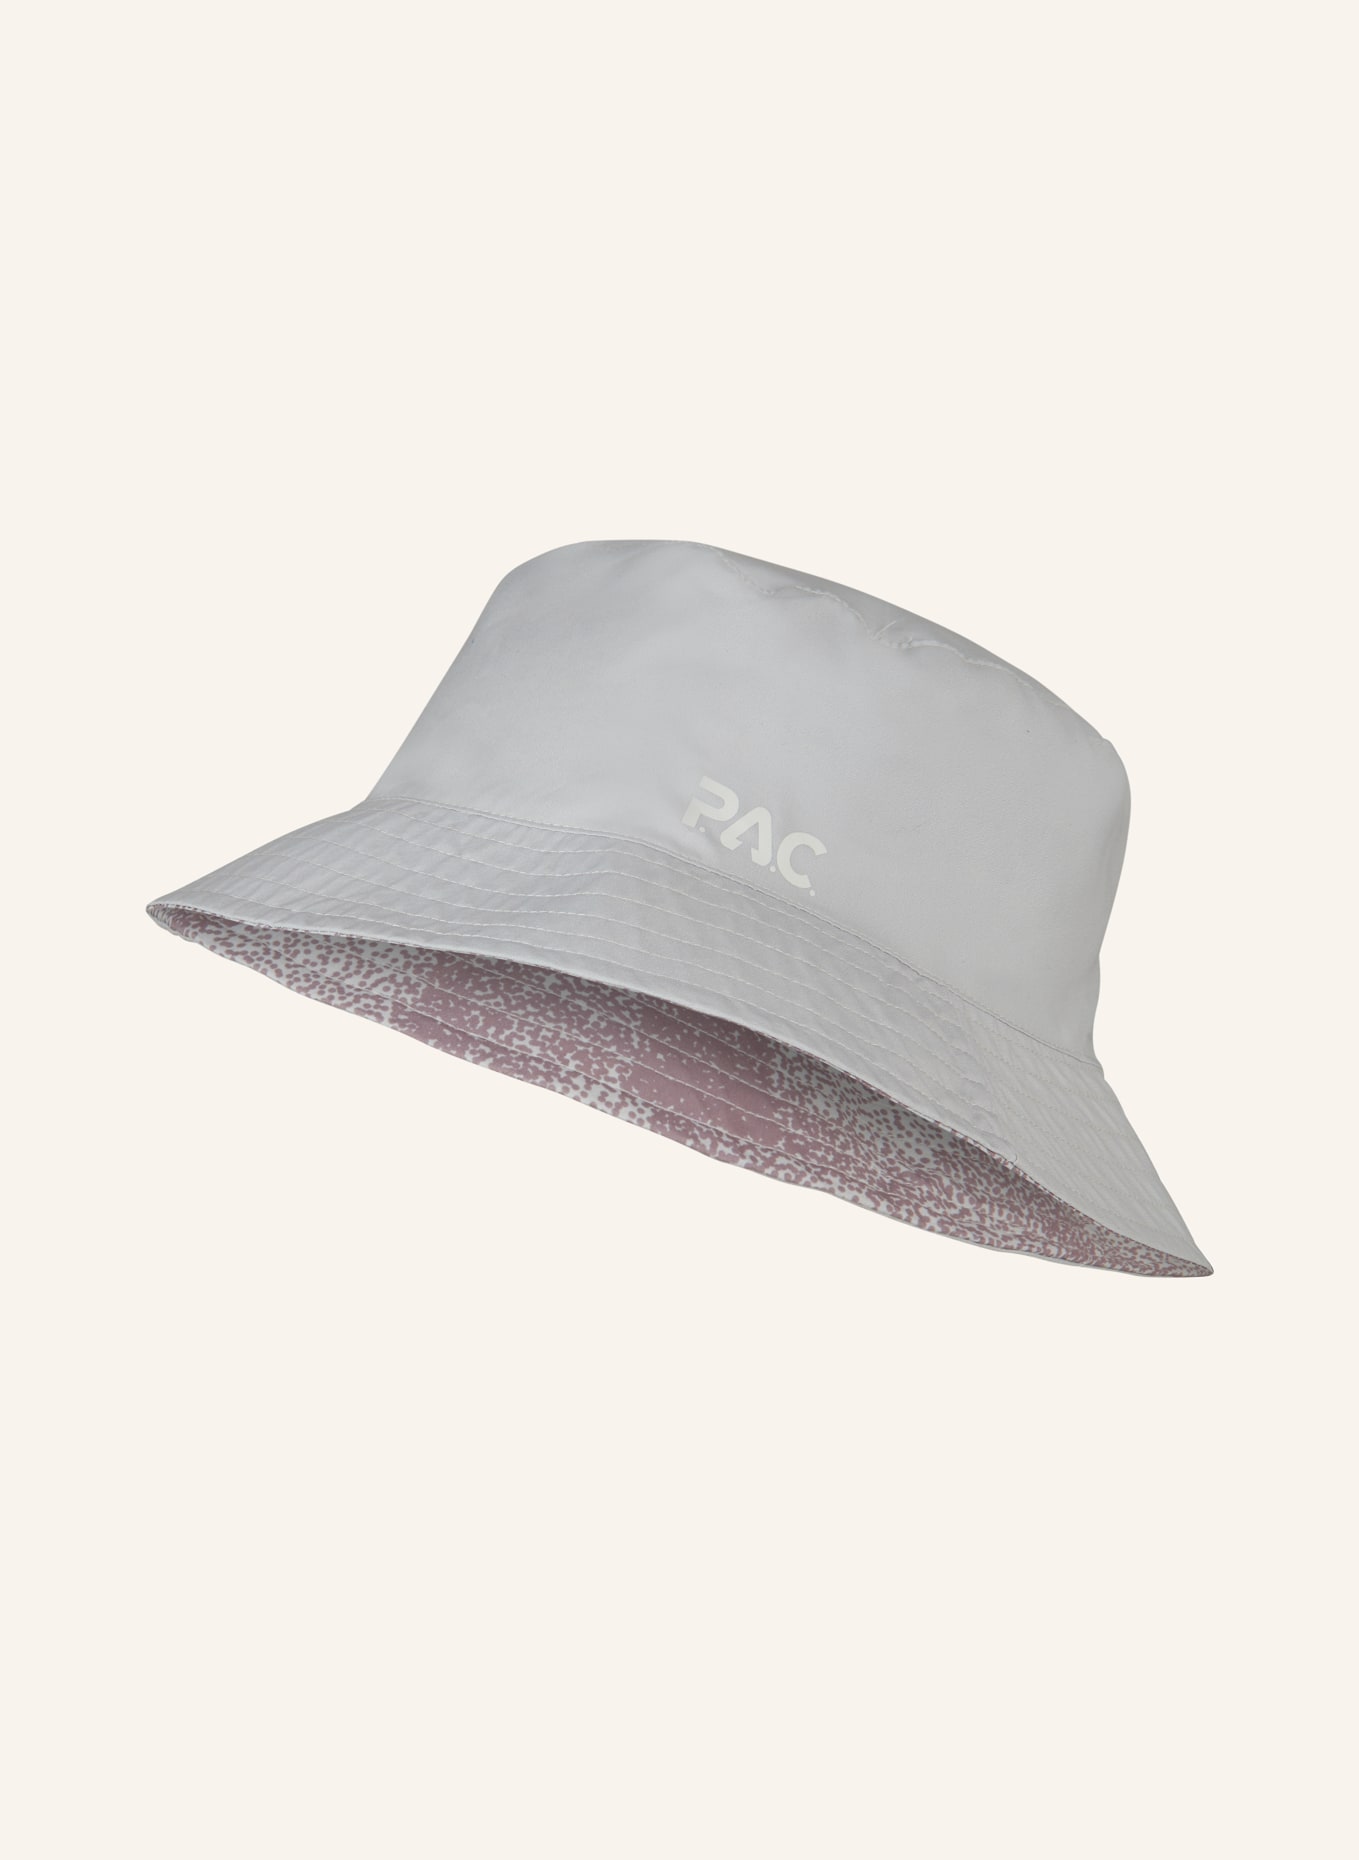 P.A.C. Reversible bucket hat LEDRAS, Color: LIGHT GRAY (Image 2)